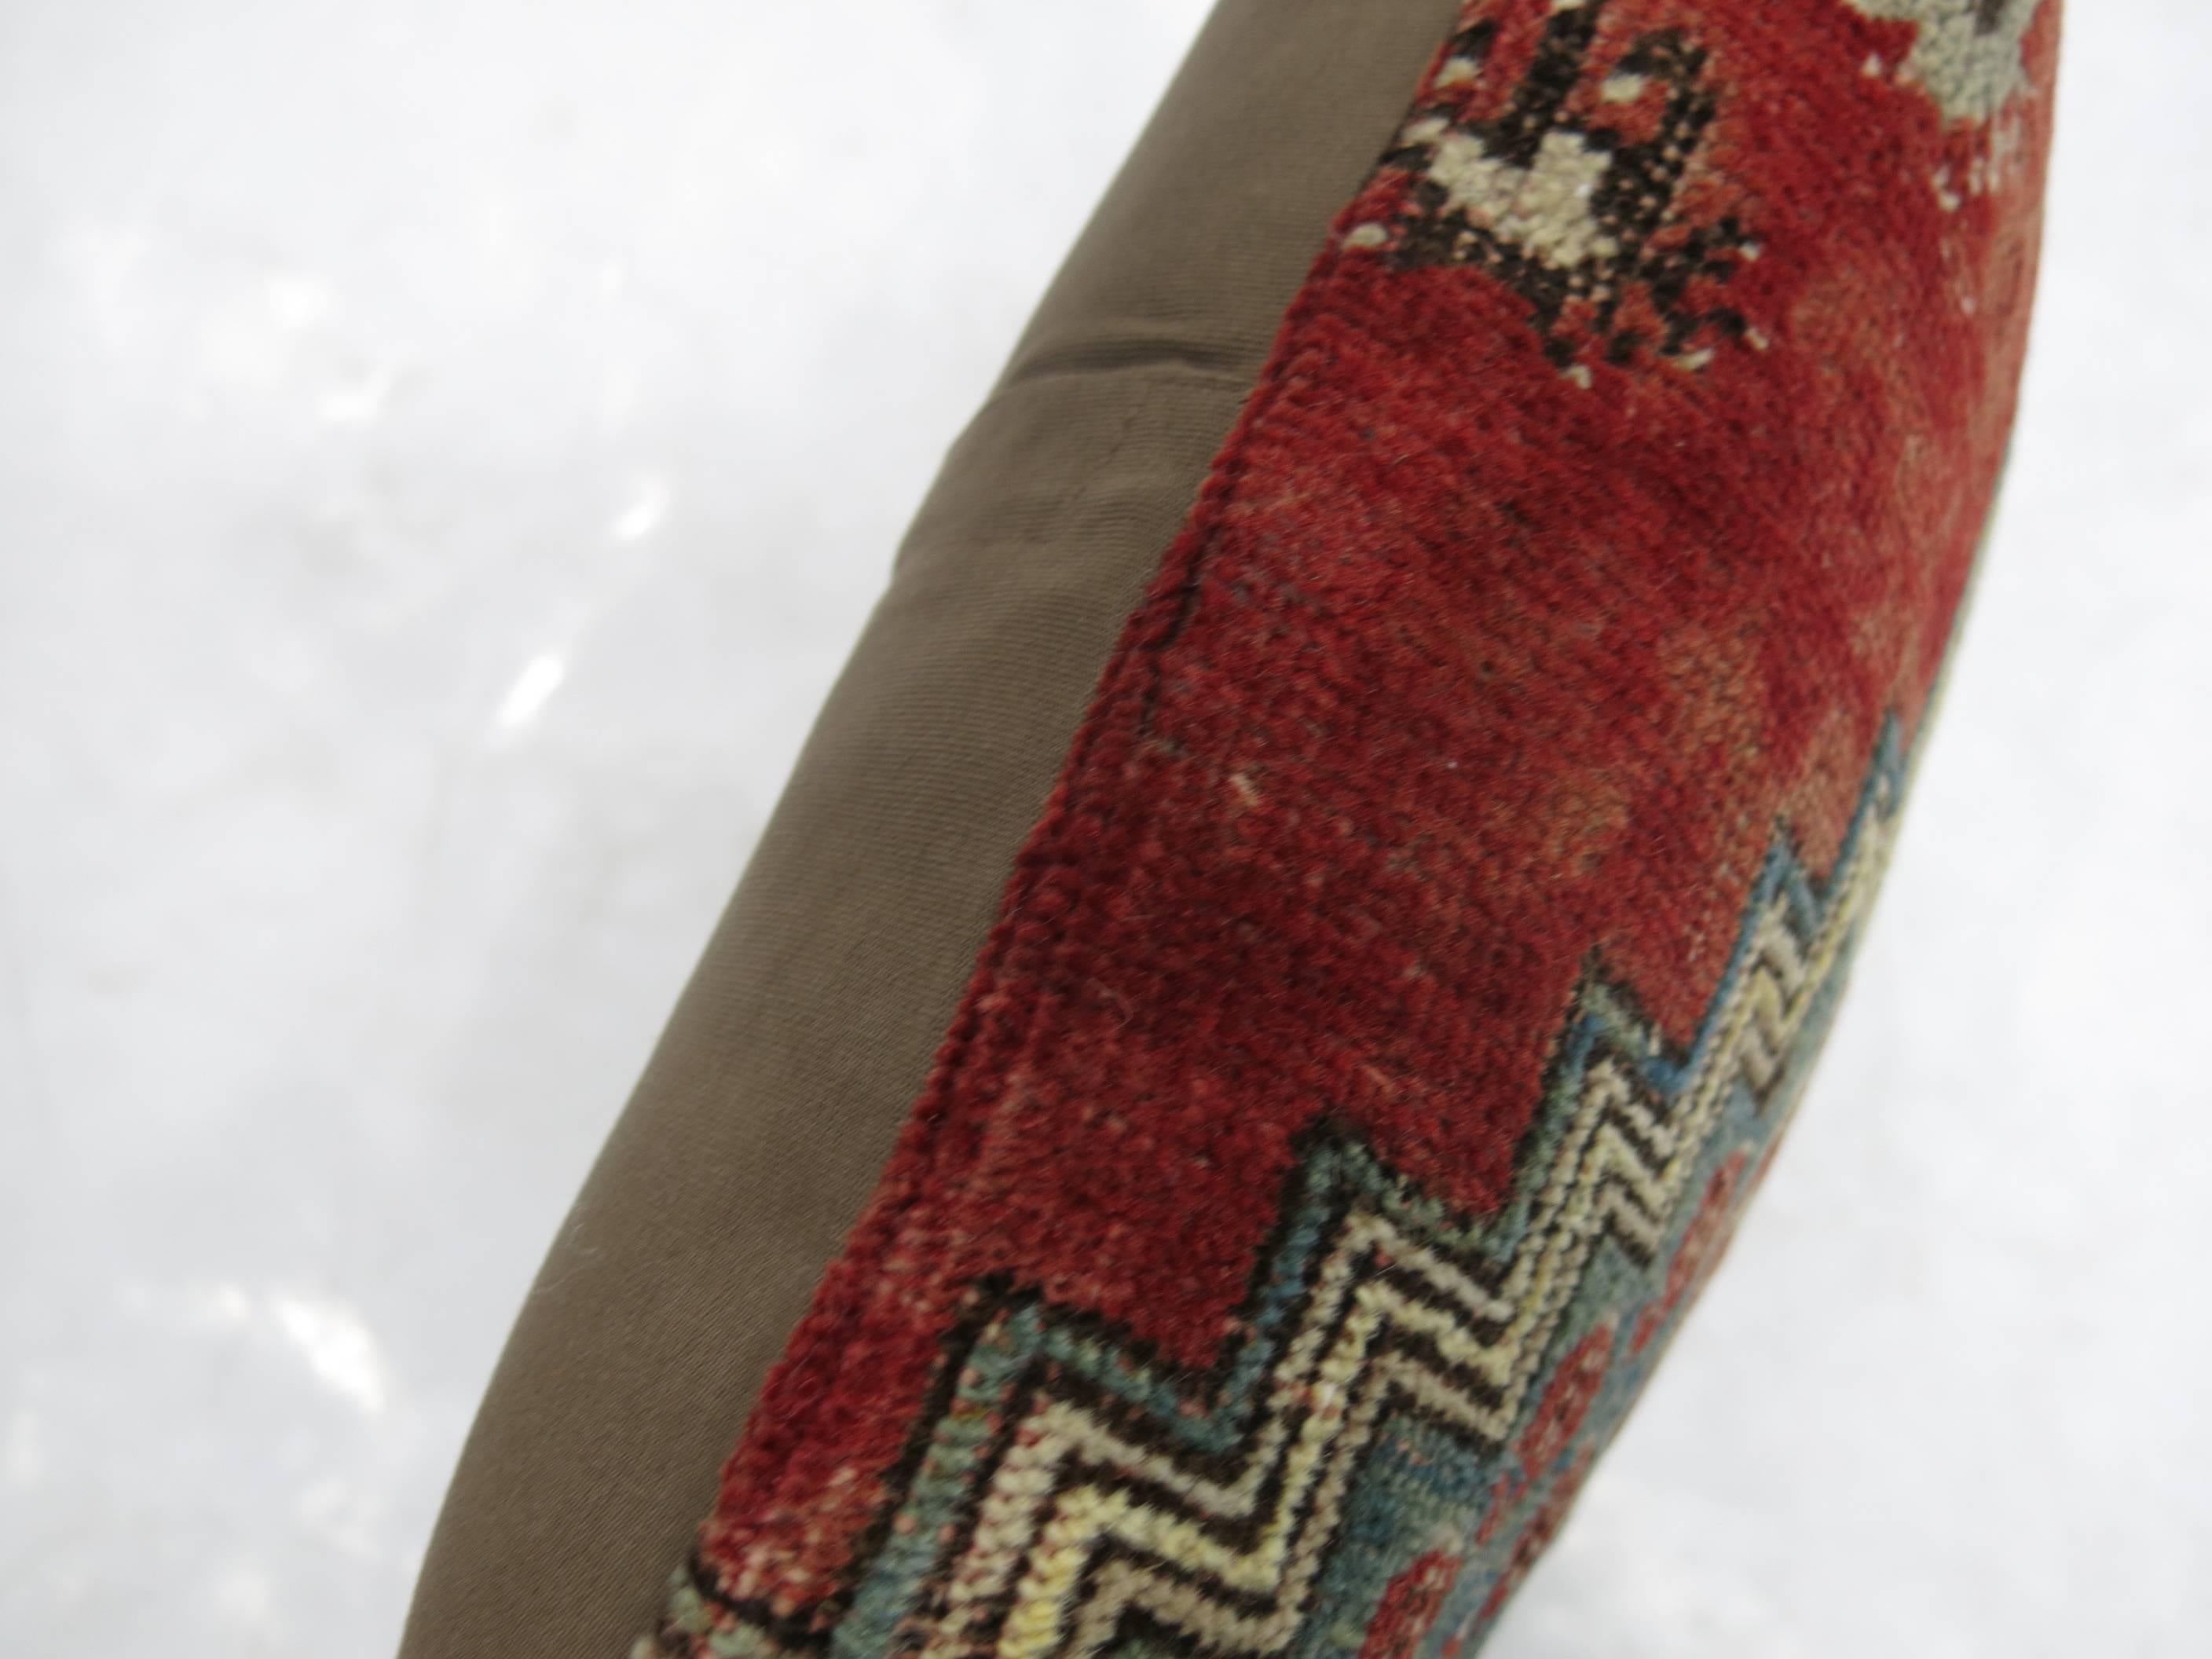 Lendenkissen, hergestellt aus einem alten türkischen Teppich.

14'' x 21''